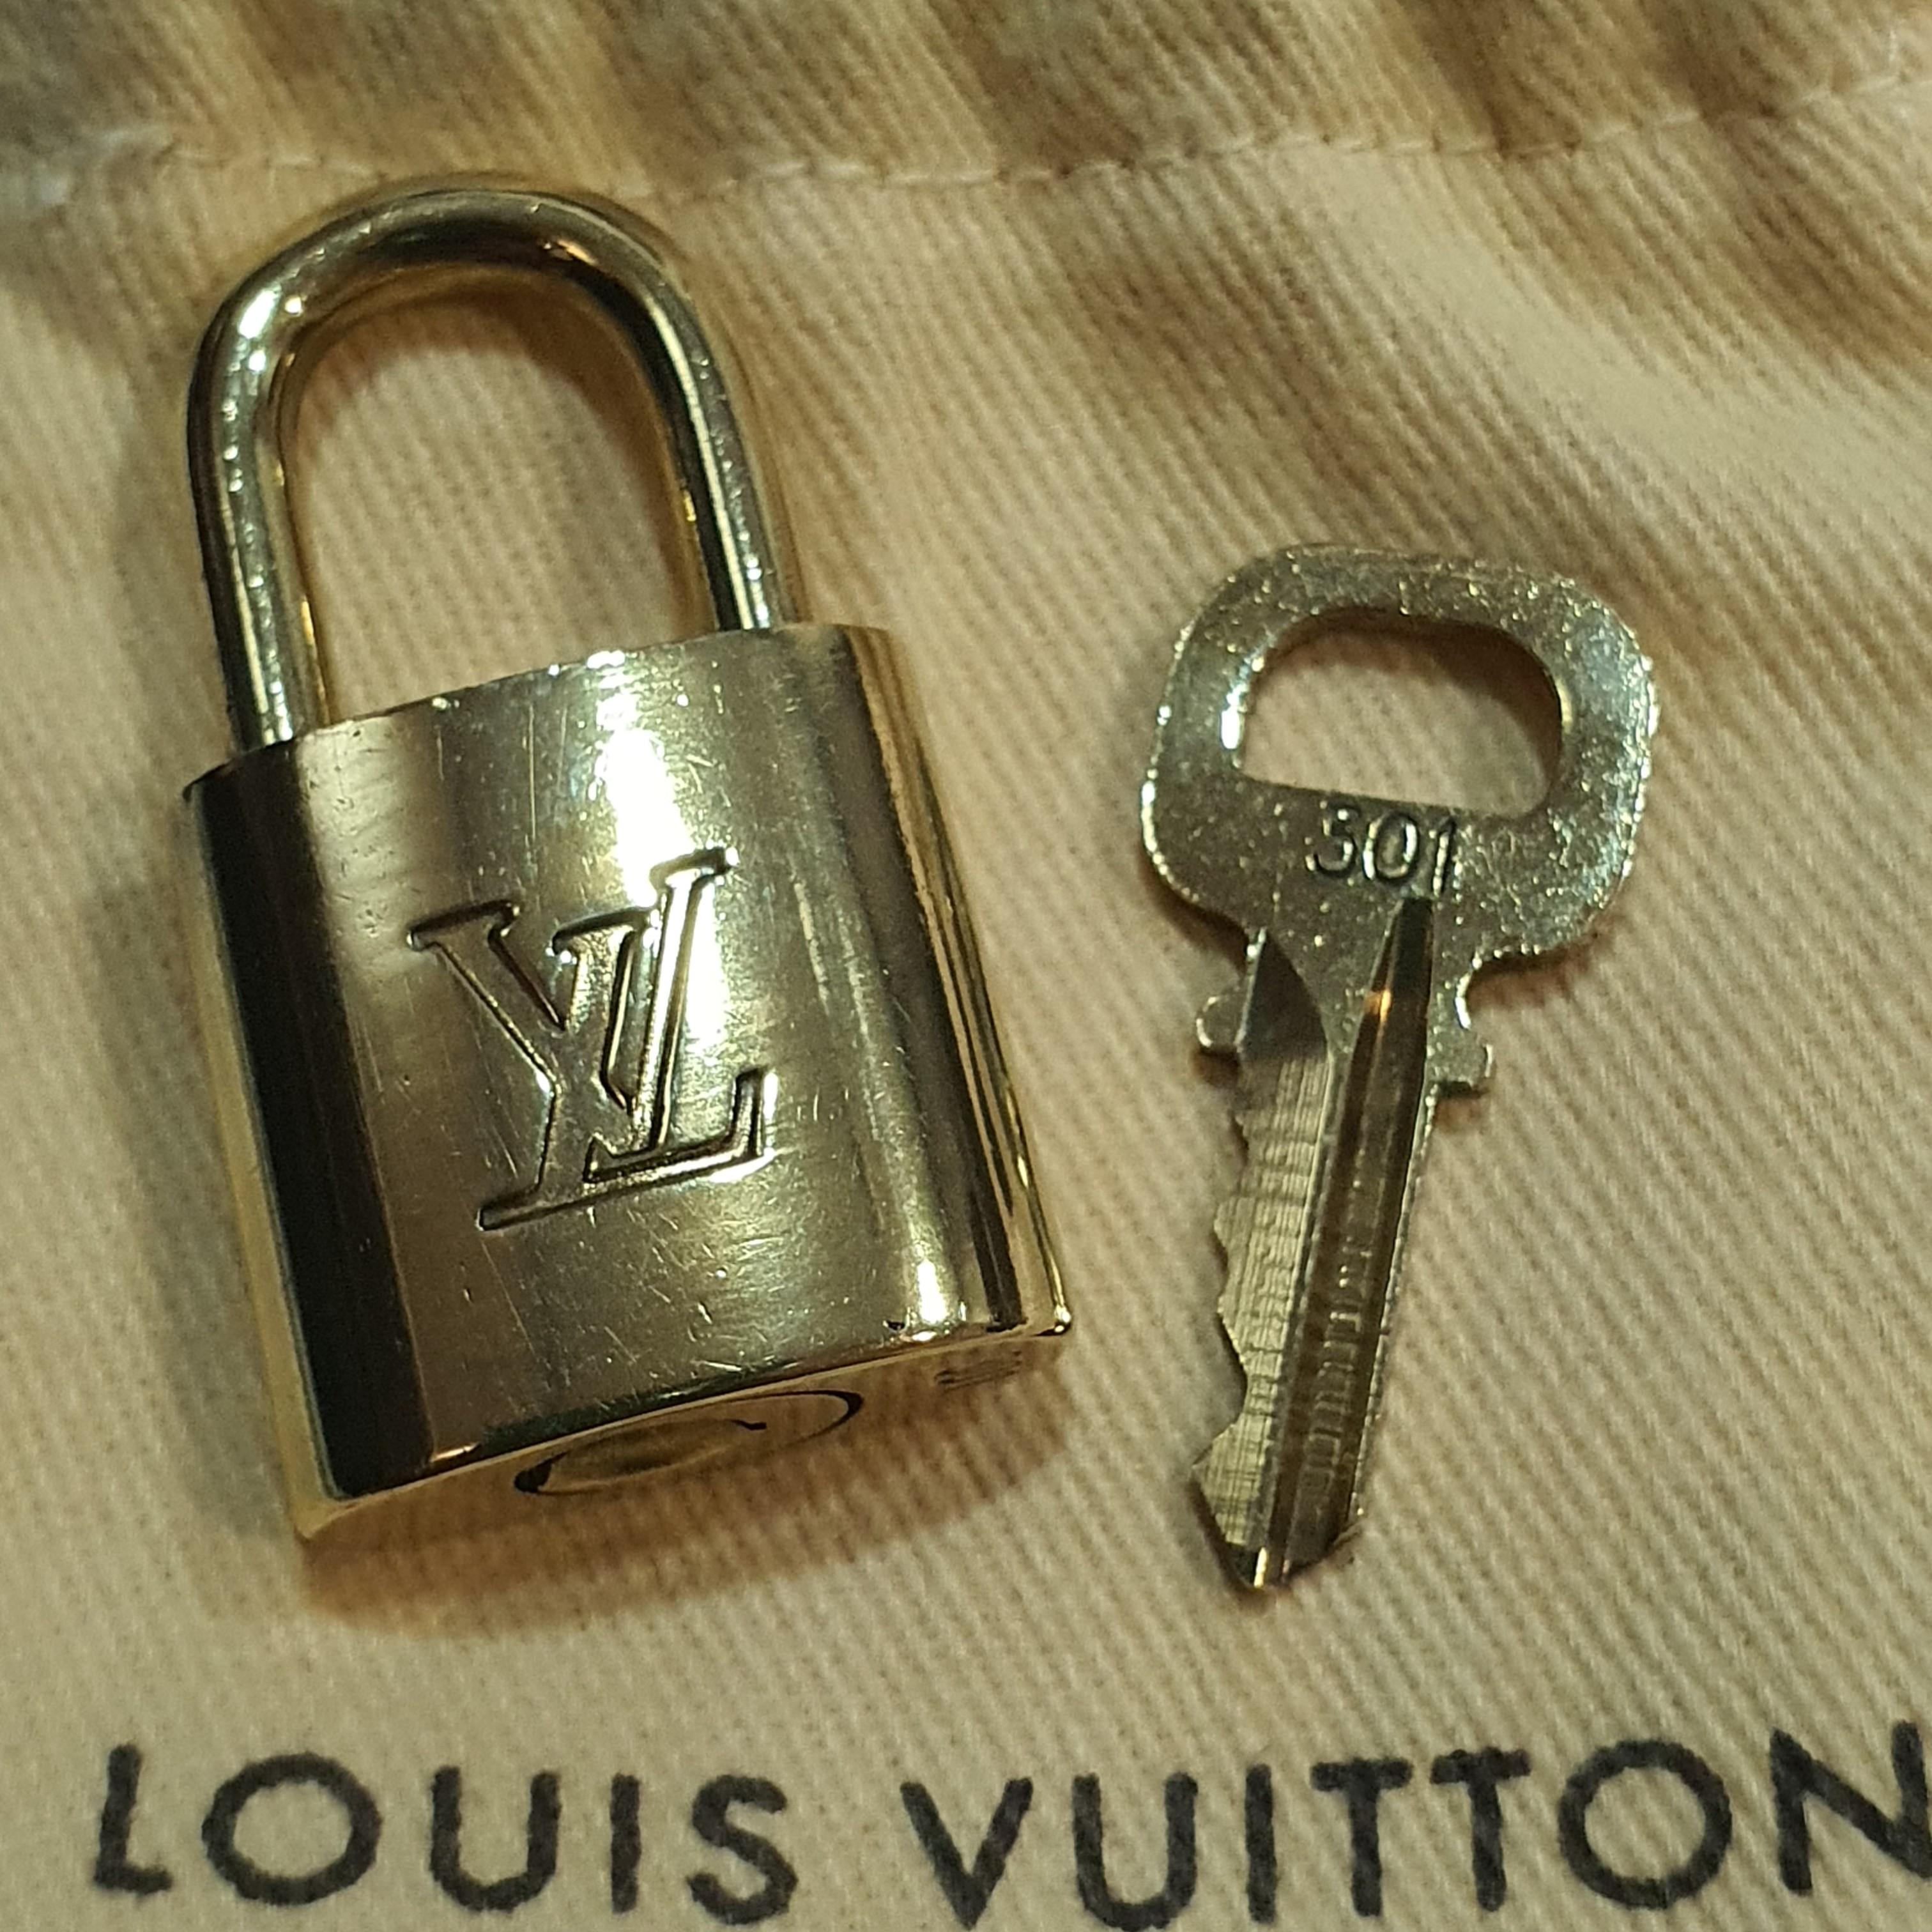 Authentic Louis Vuitton Padlock & key No.301